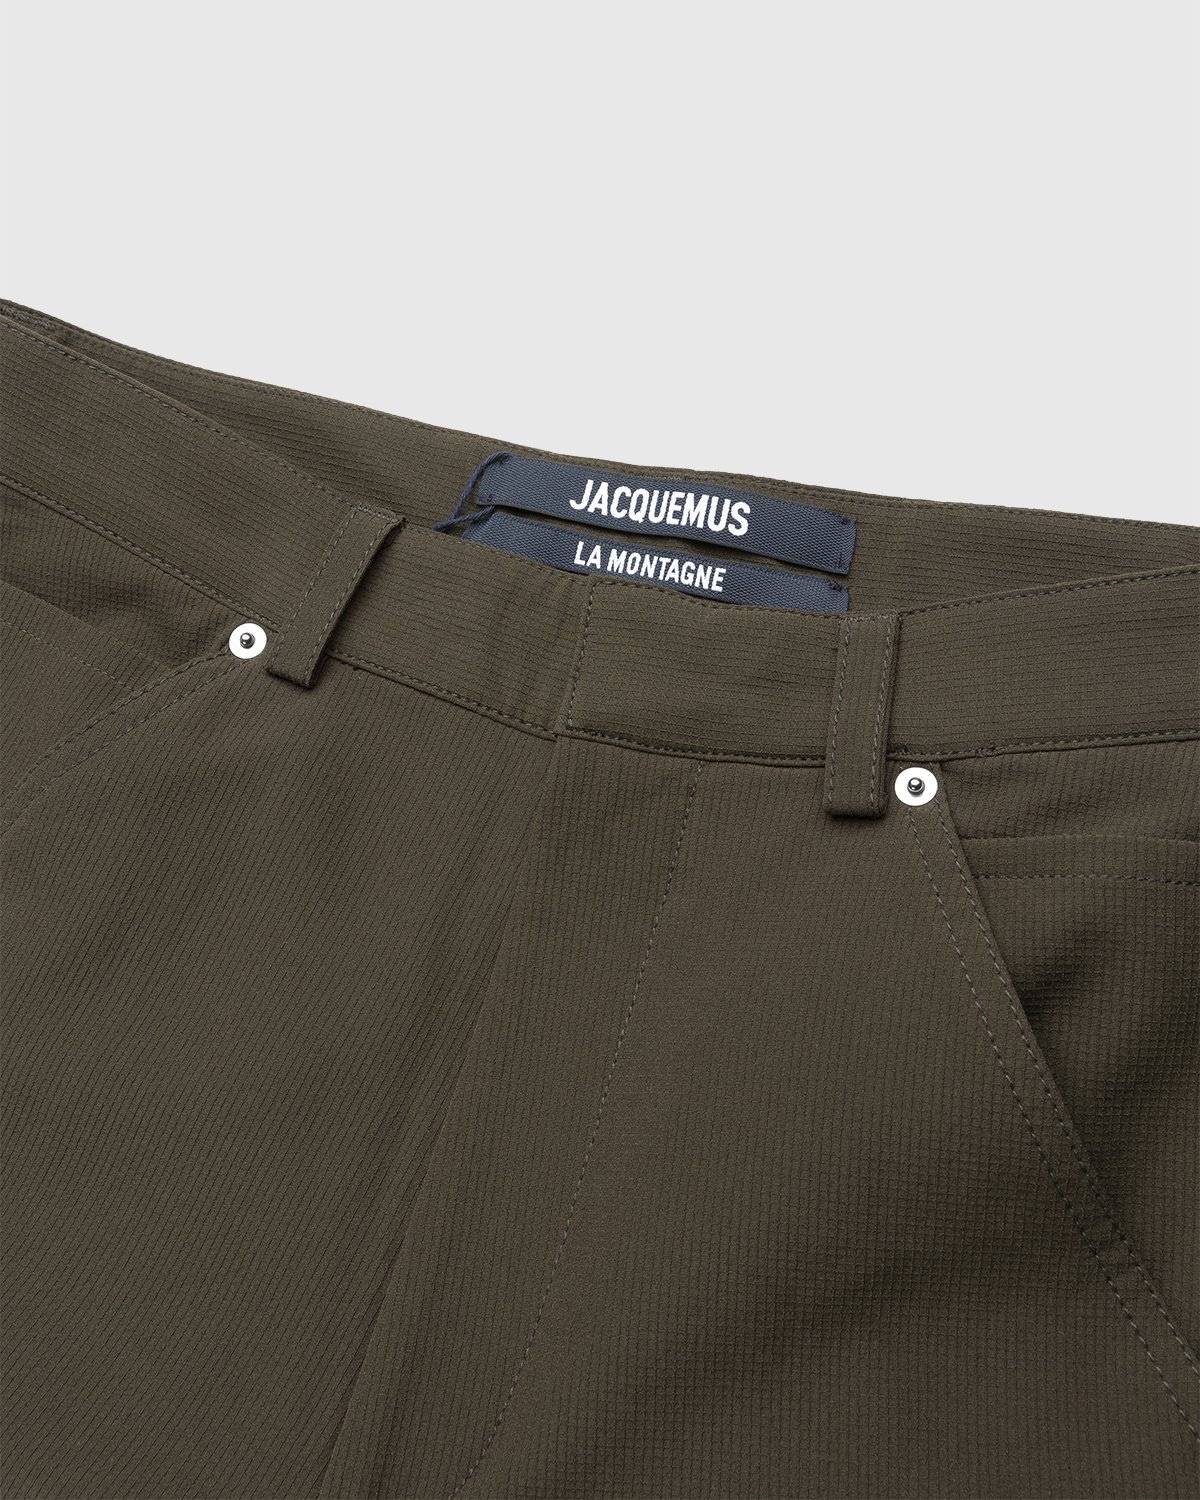 JACQUEMUS - Le Pantalon Peche Dark Khaki - Clothing - Green - Image 3